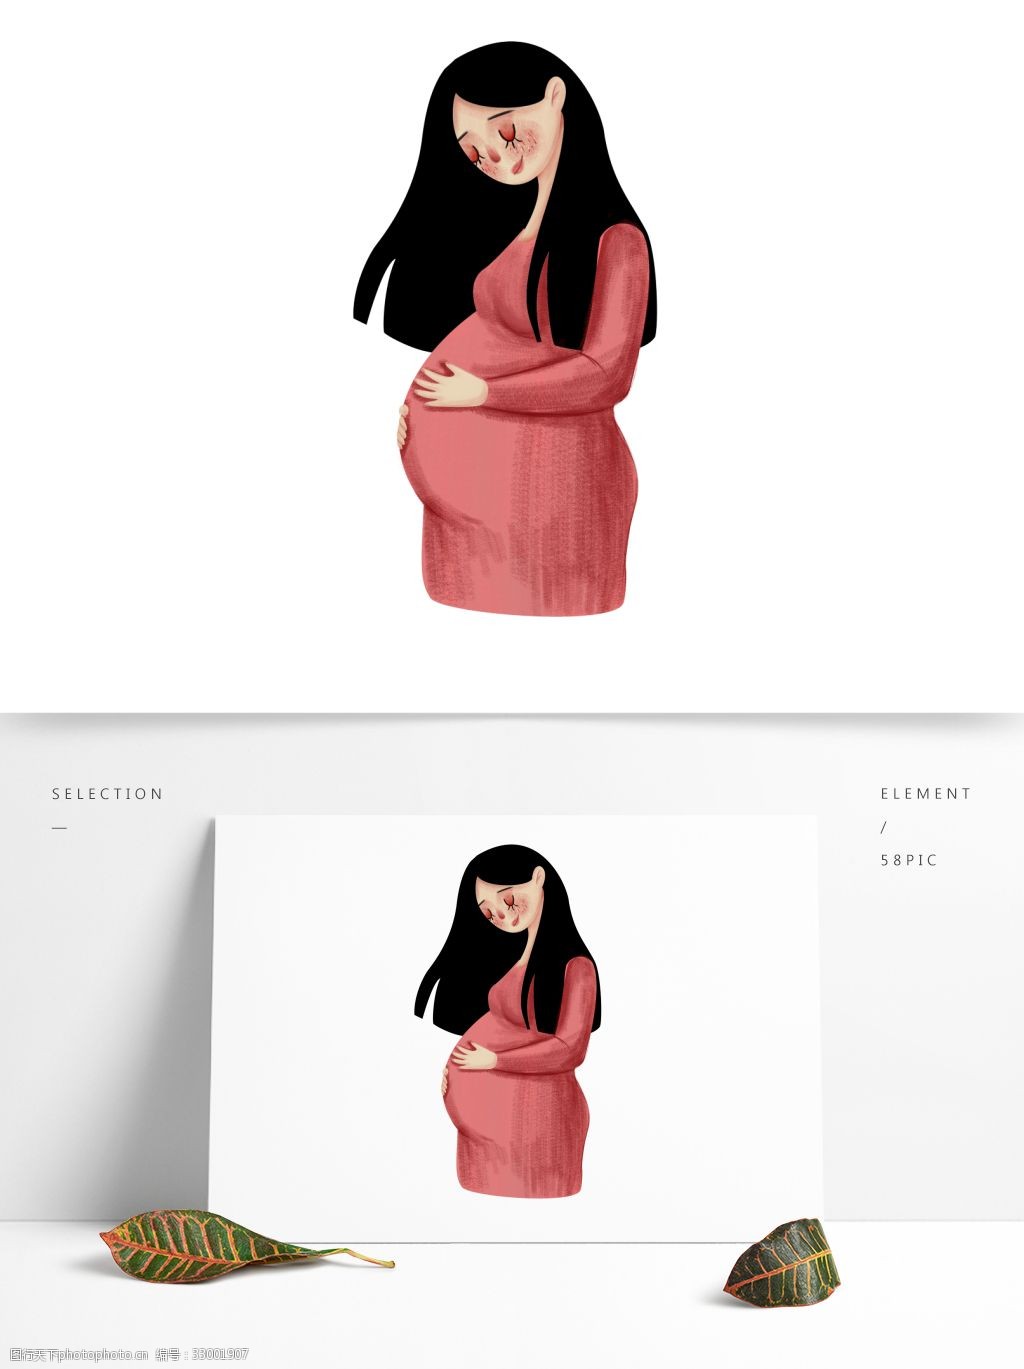 卡通手绘孕妇插画人物素材